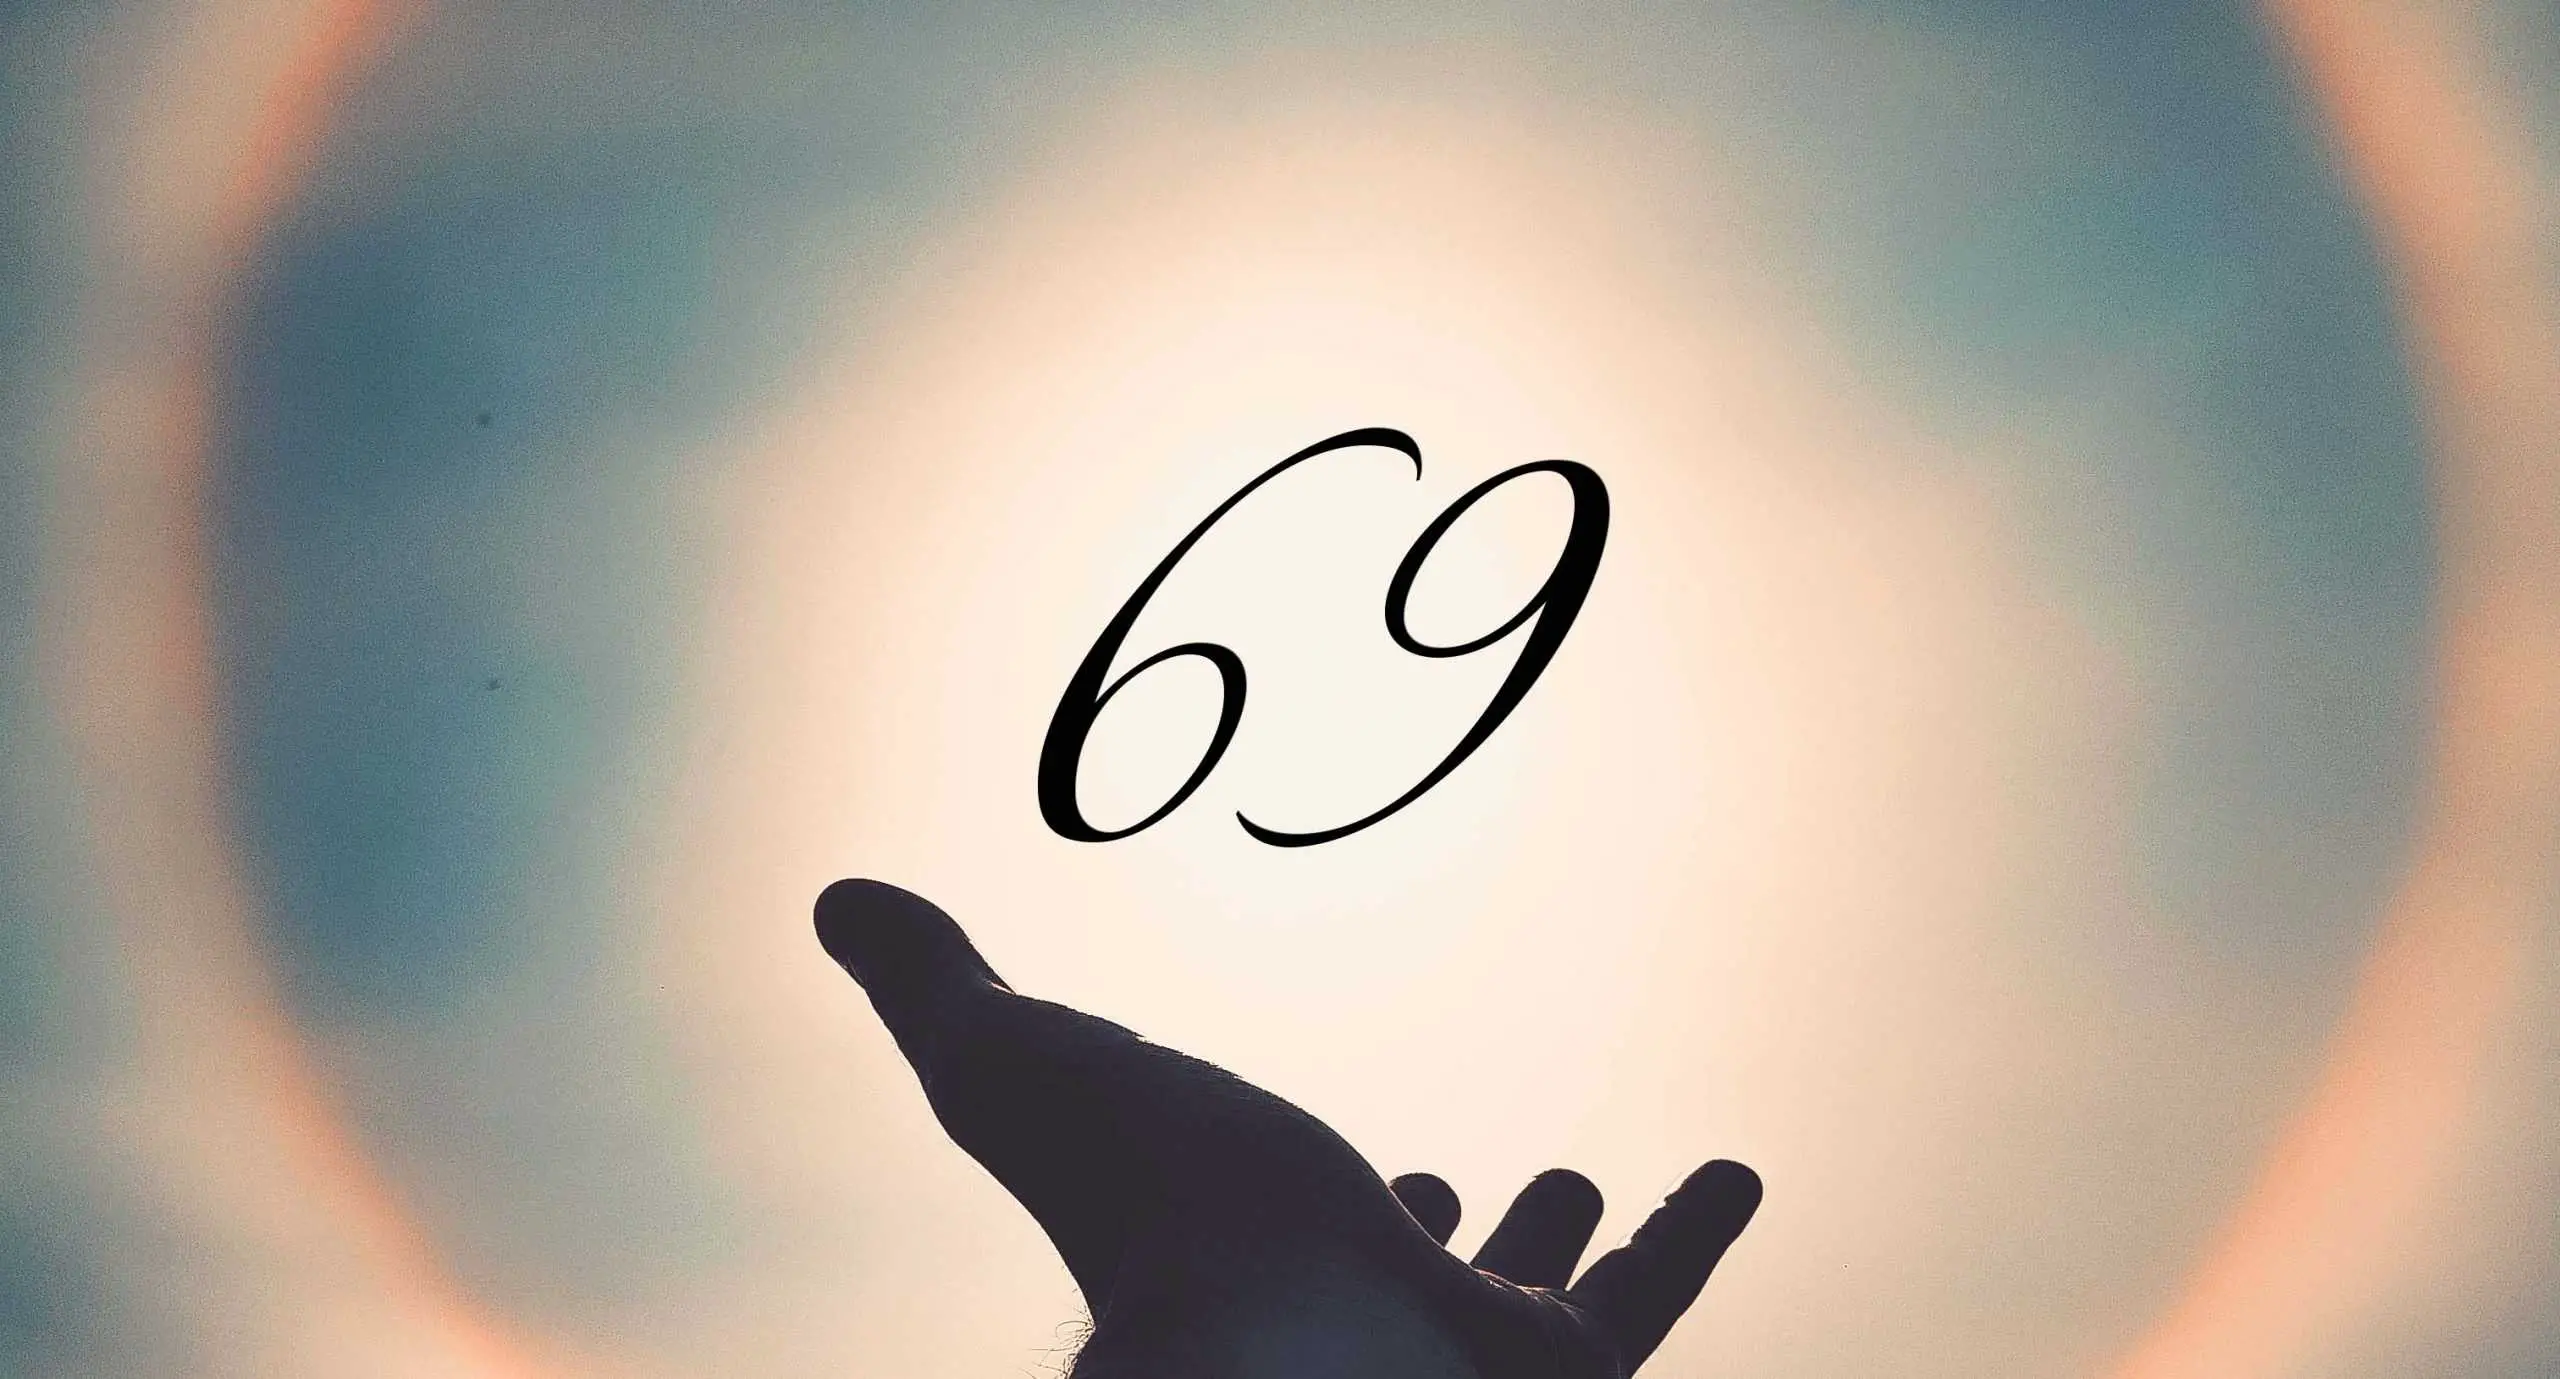 Signification du nombre 69